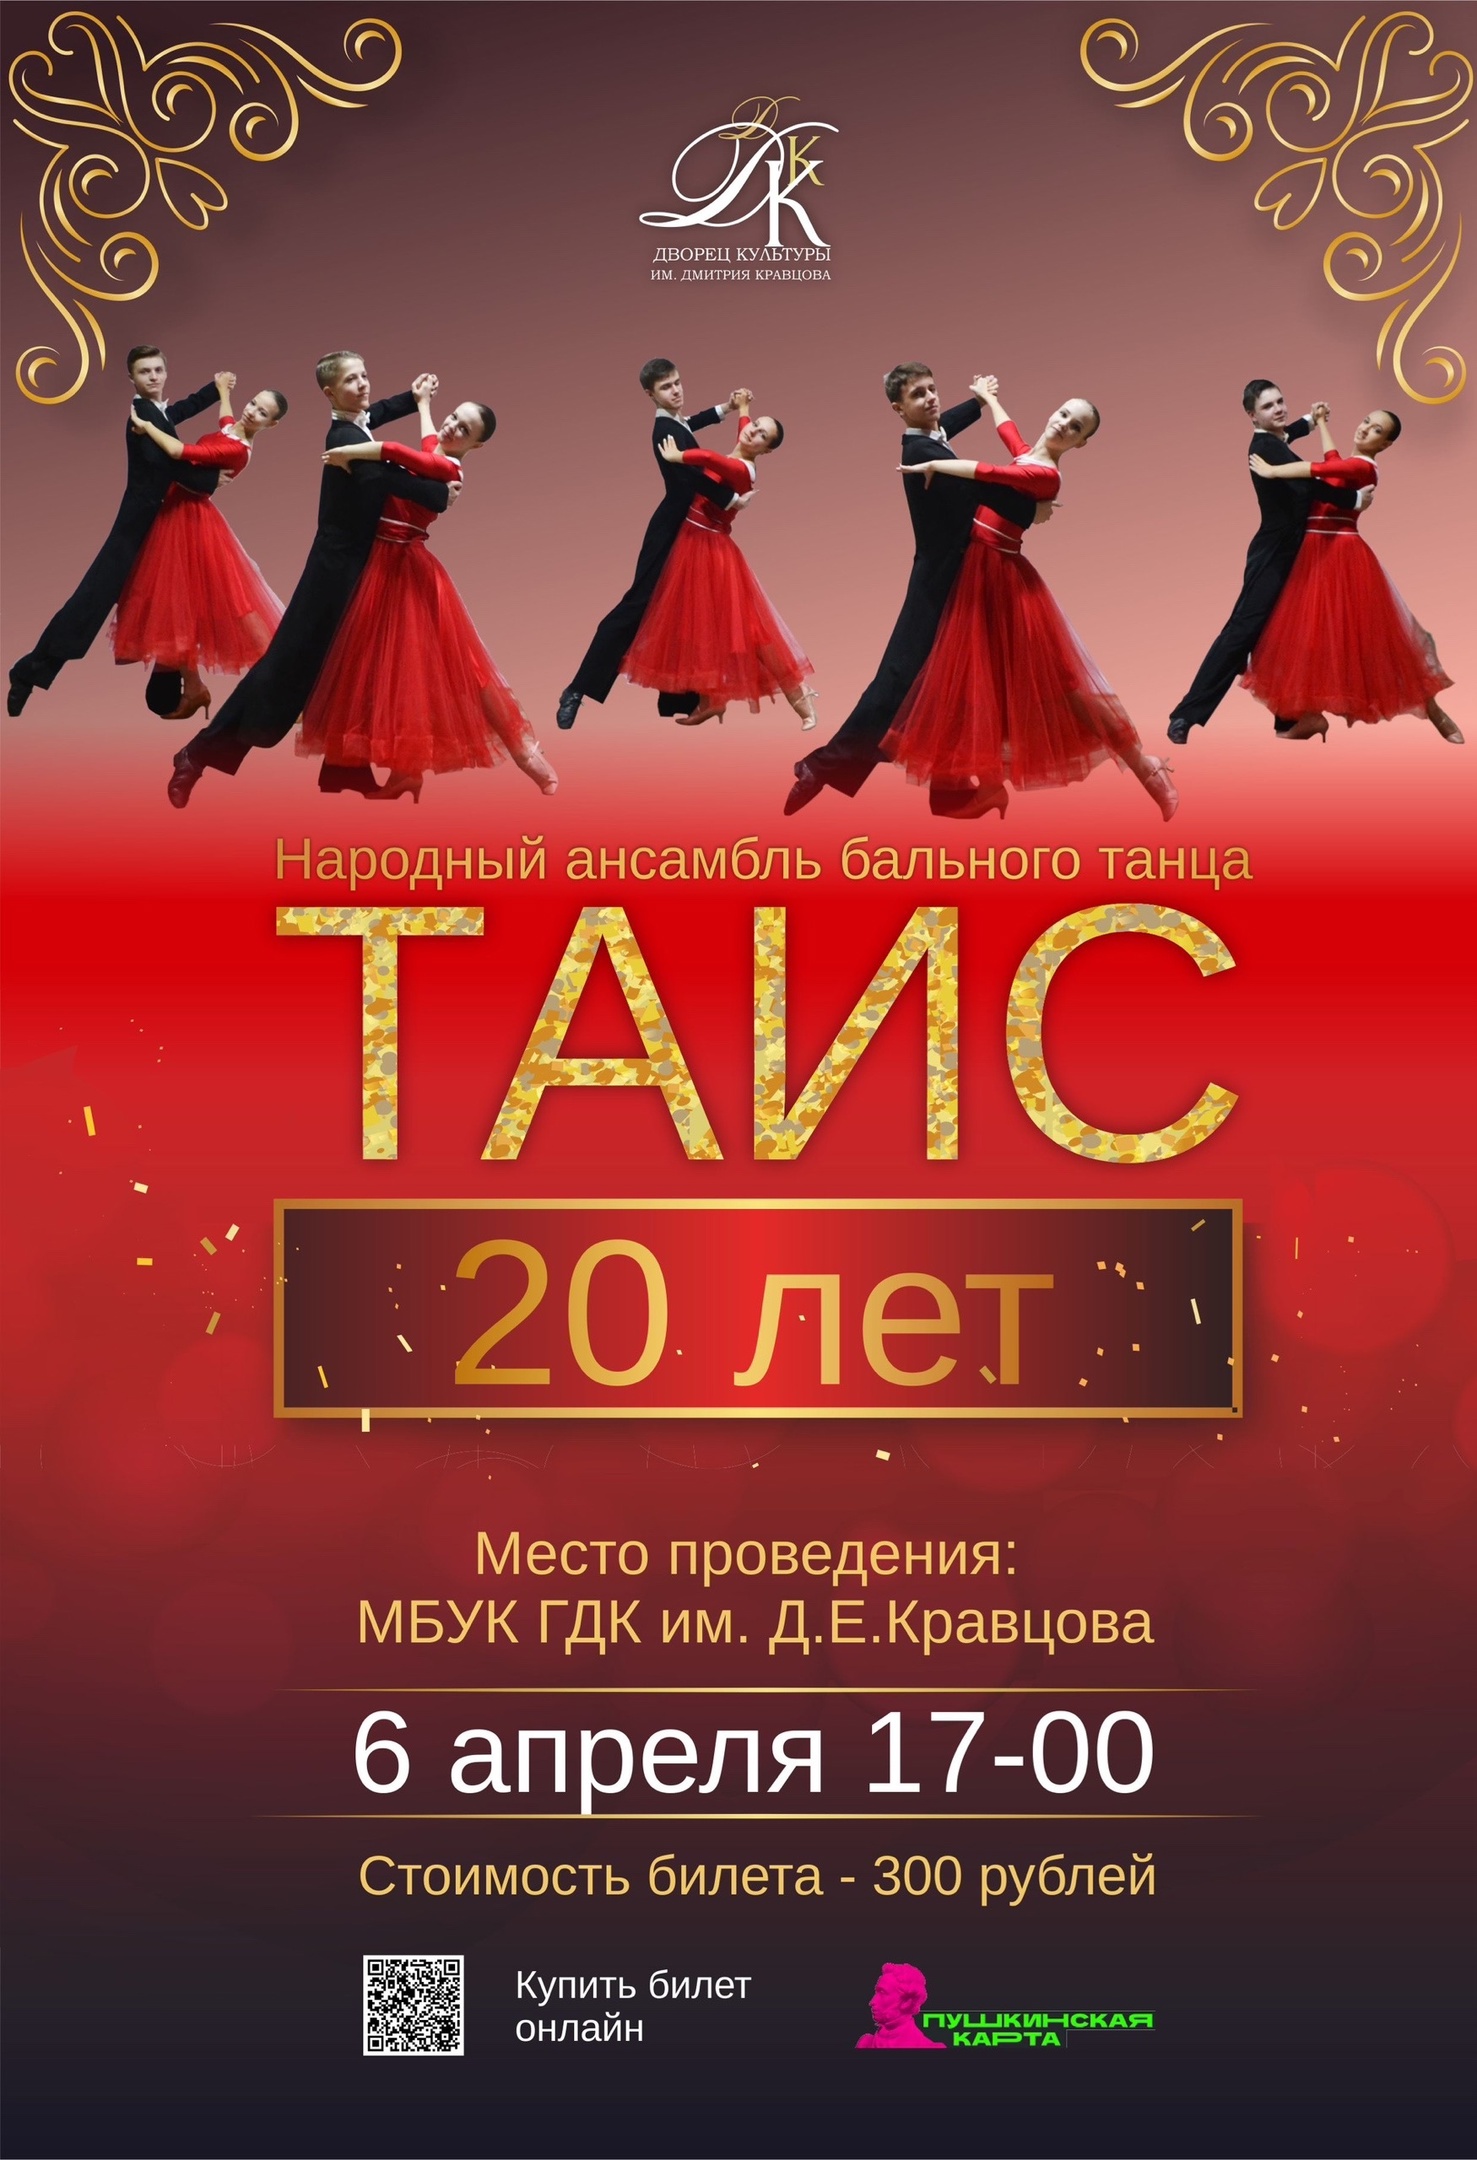 6 апреля в 17-00 народный ансамбль бального танца 